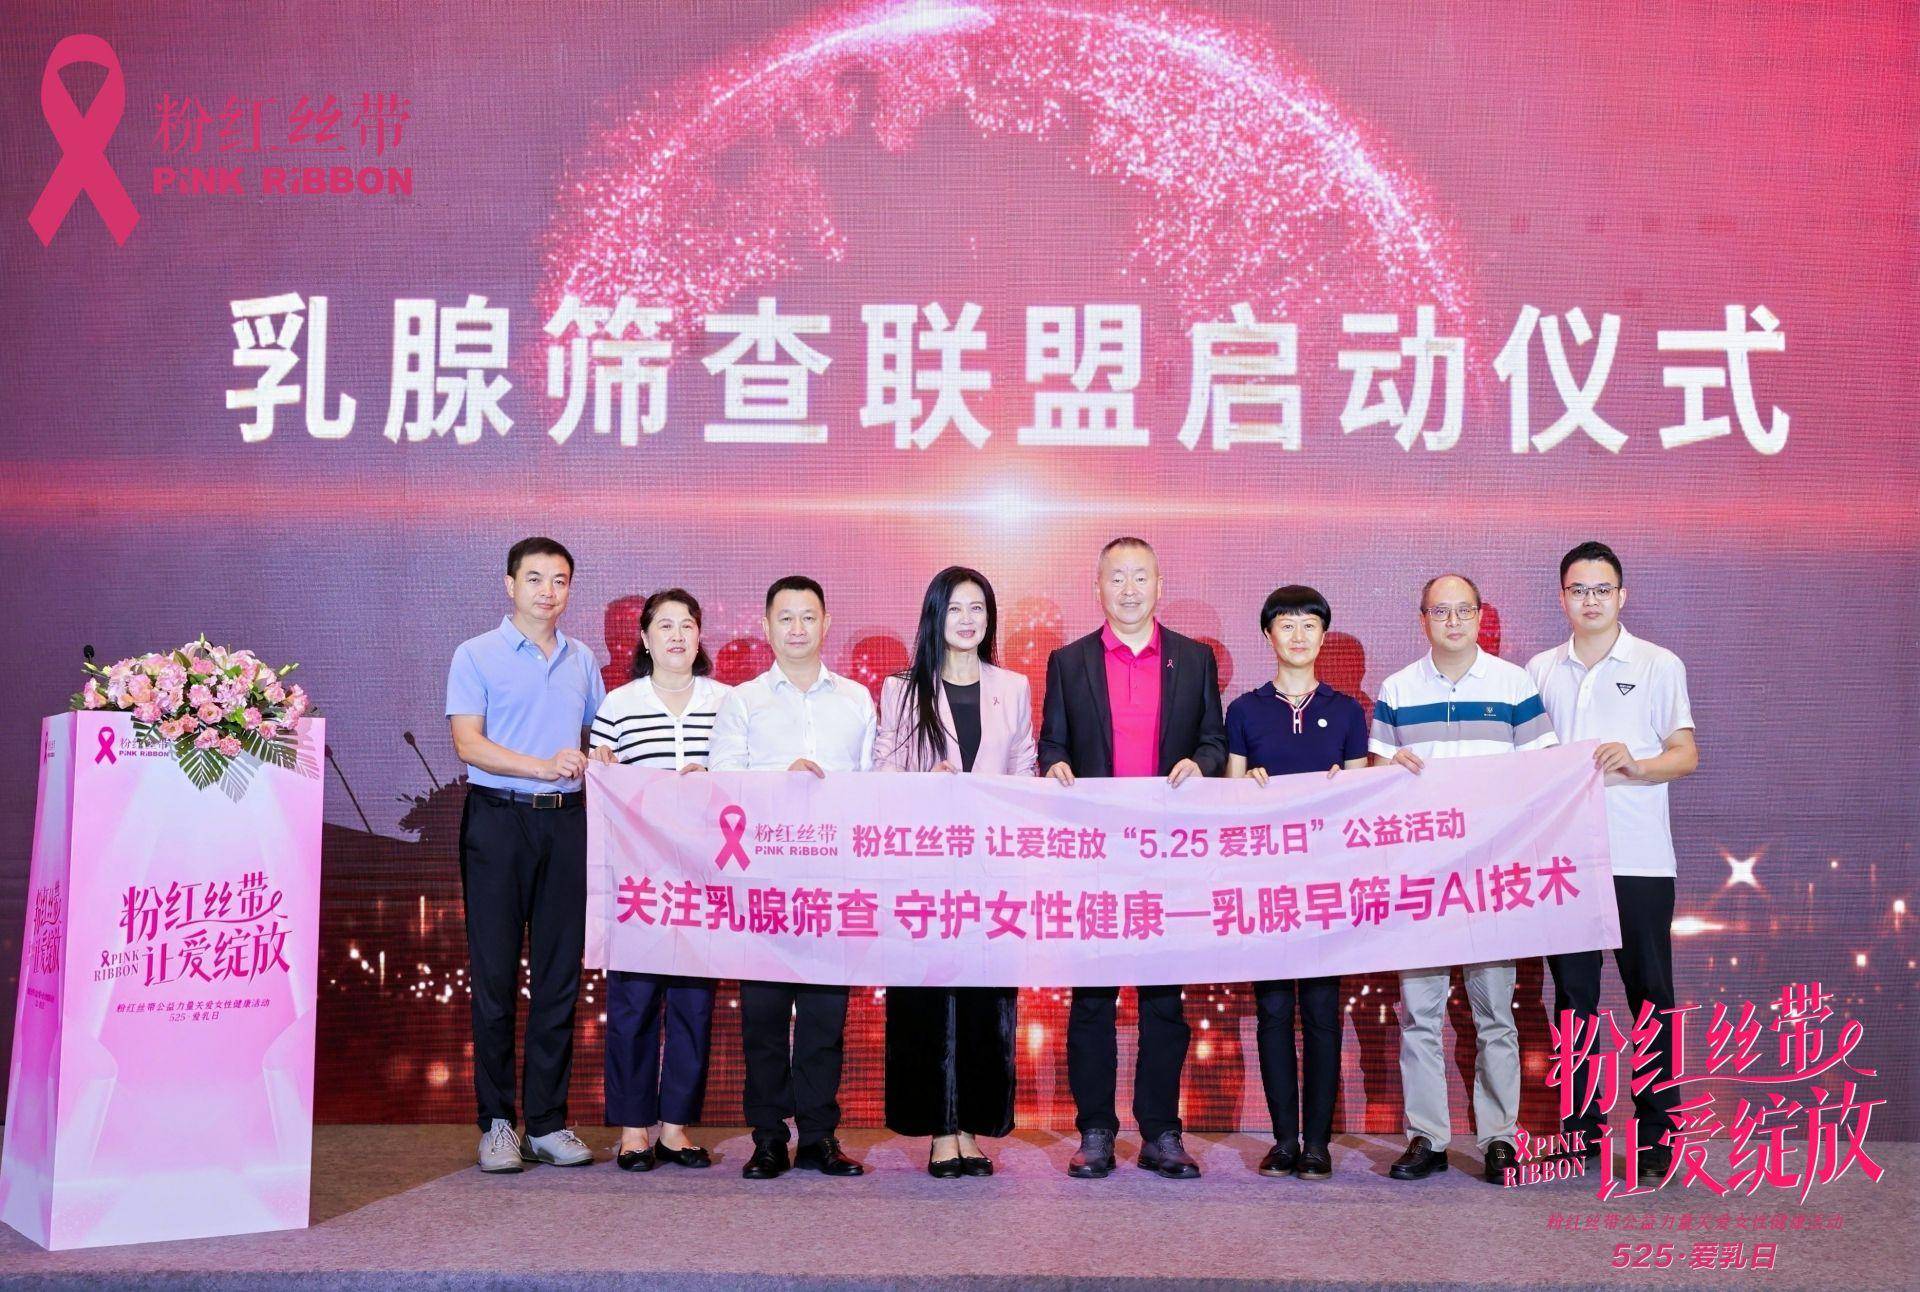 让ai技术更好地服务乳腺早筛,玫瑰行乳腺筛查公益项目在深圳启动